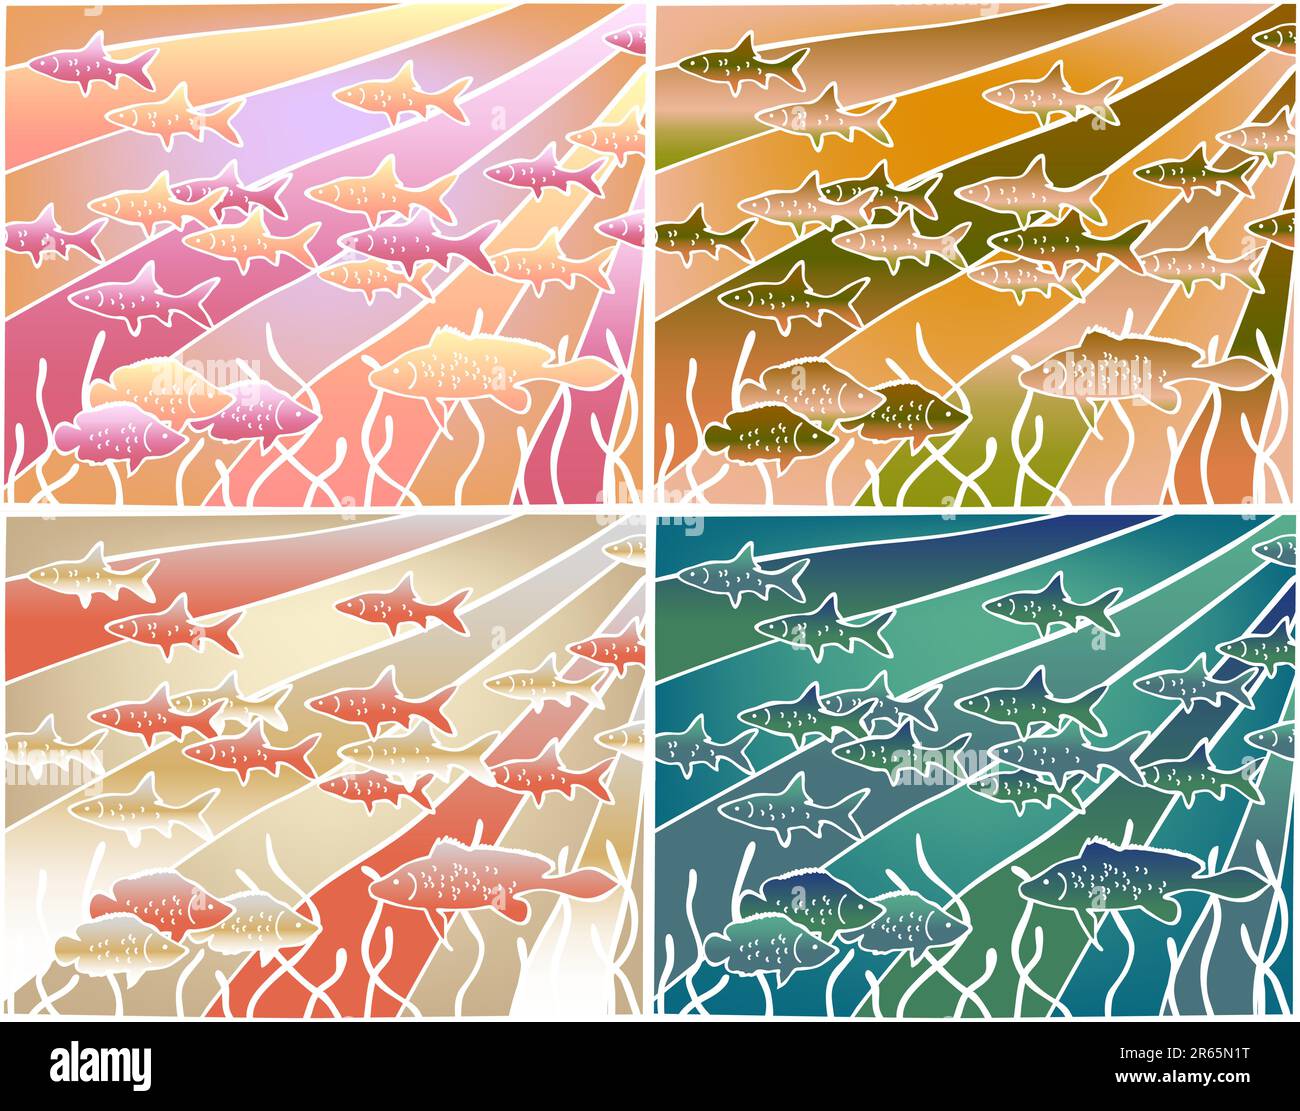 Vier Farbvarianten einer bearbeitbaren Vektor-Illustration von Fischen im Batik-Stil Stock Vektor